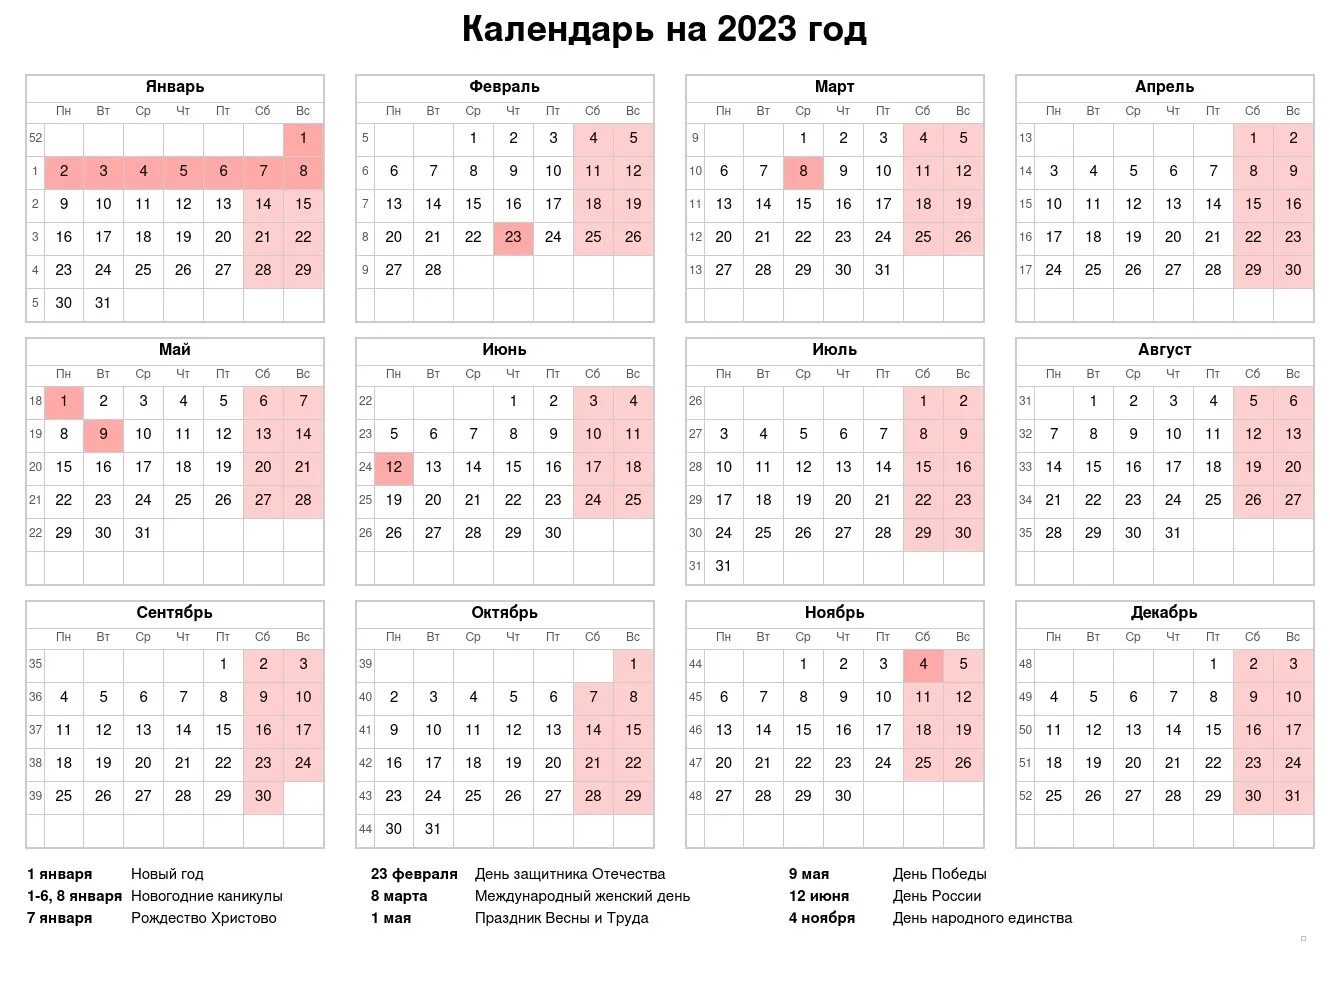 Производственный календарь на 2022 год с праздниками и выходными. Выходные и праздники 2022 года в России нерабочие дни. Календарь выходных и праздничных дней на 2022 год в России. Праздничные и выходные дни в 2022 году в России Министерство труда. Какие праздники 2022 году